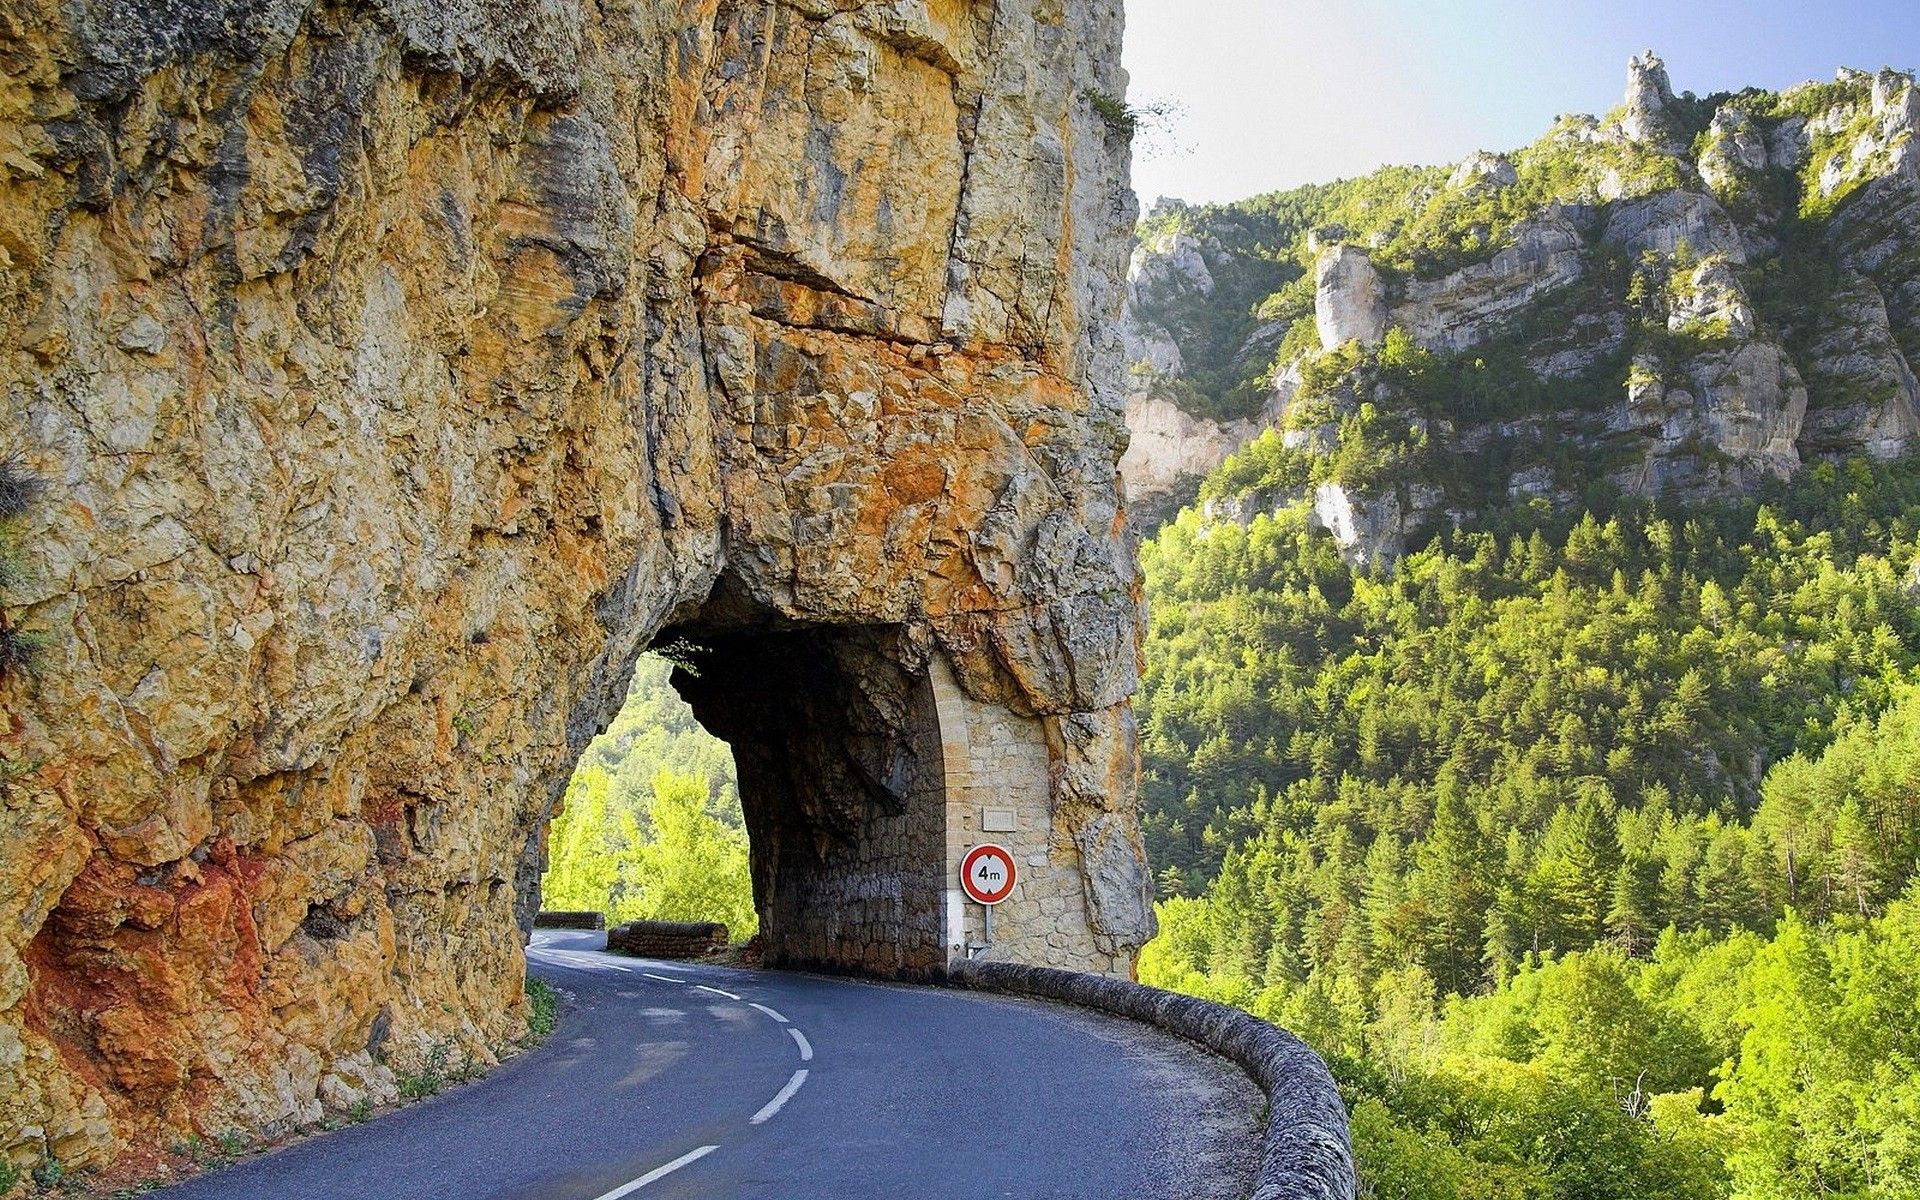 تصویر بسیار جالب HD از تونل کوچک درون کوه برای جاده